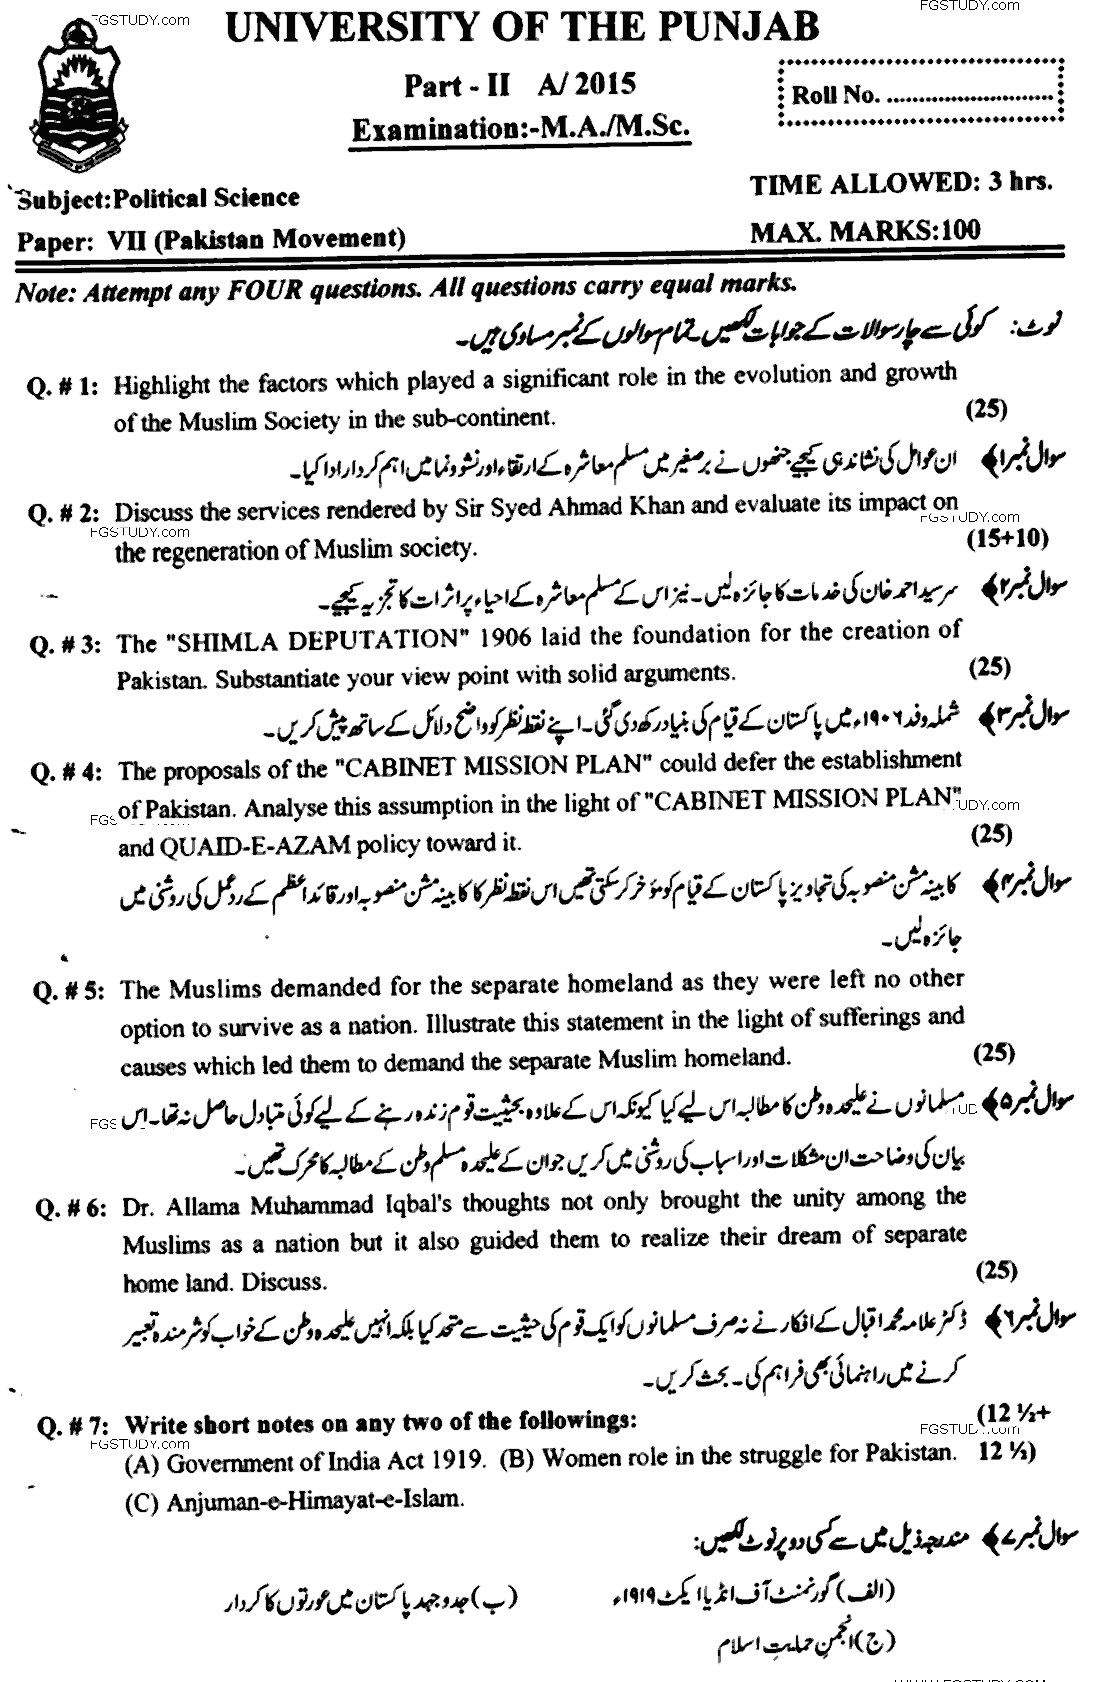 MA Part 2 Political Science Pakistan Movement Past Paper 2015 Punjab University